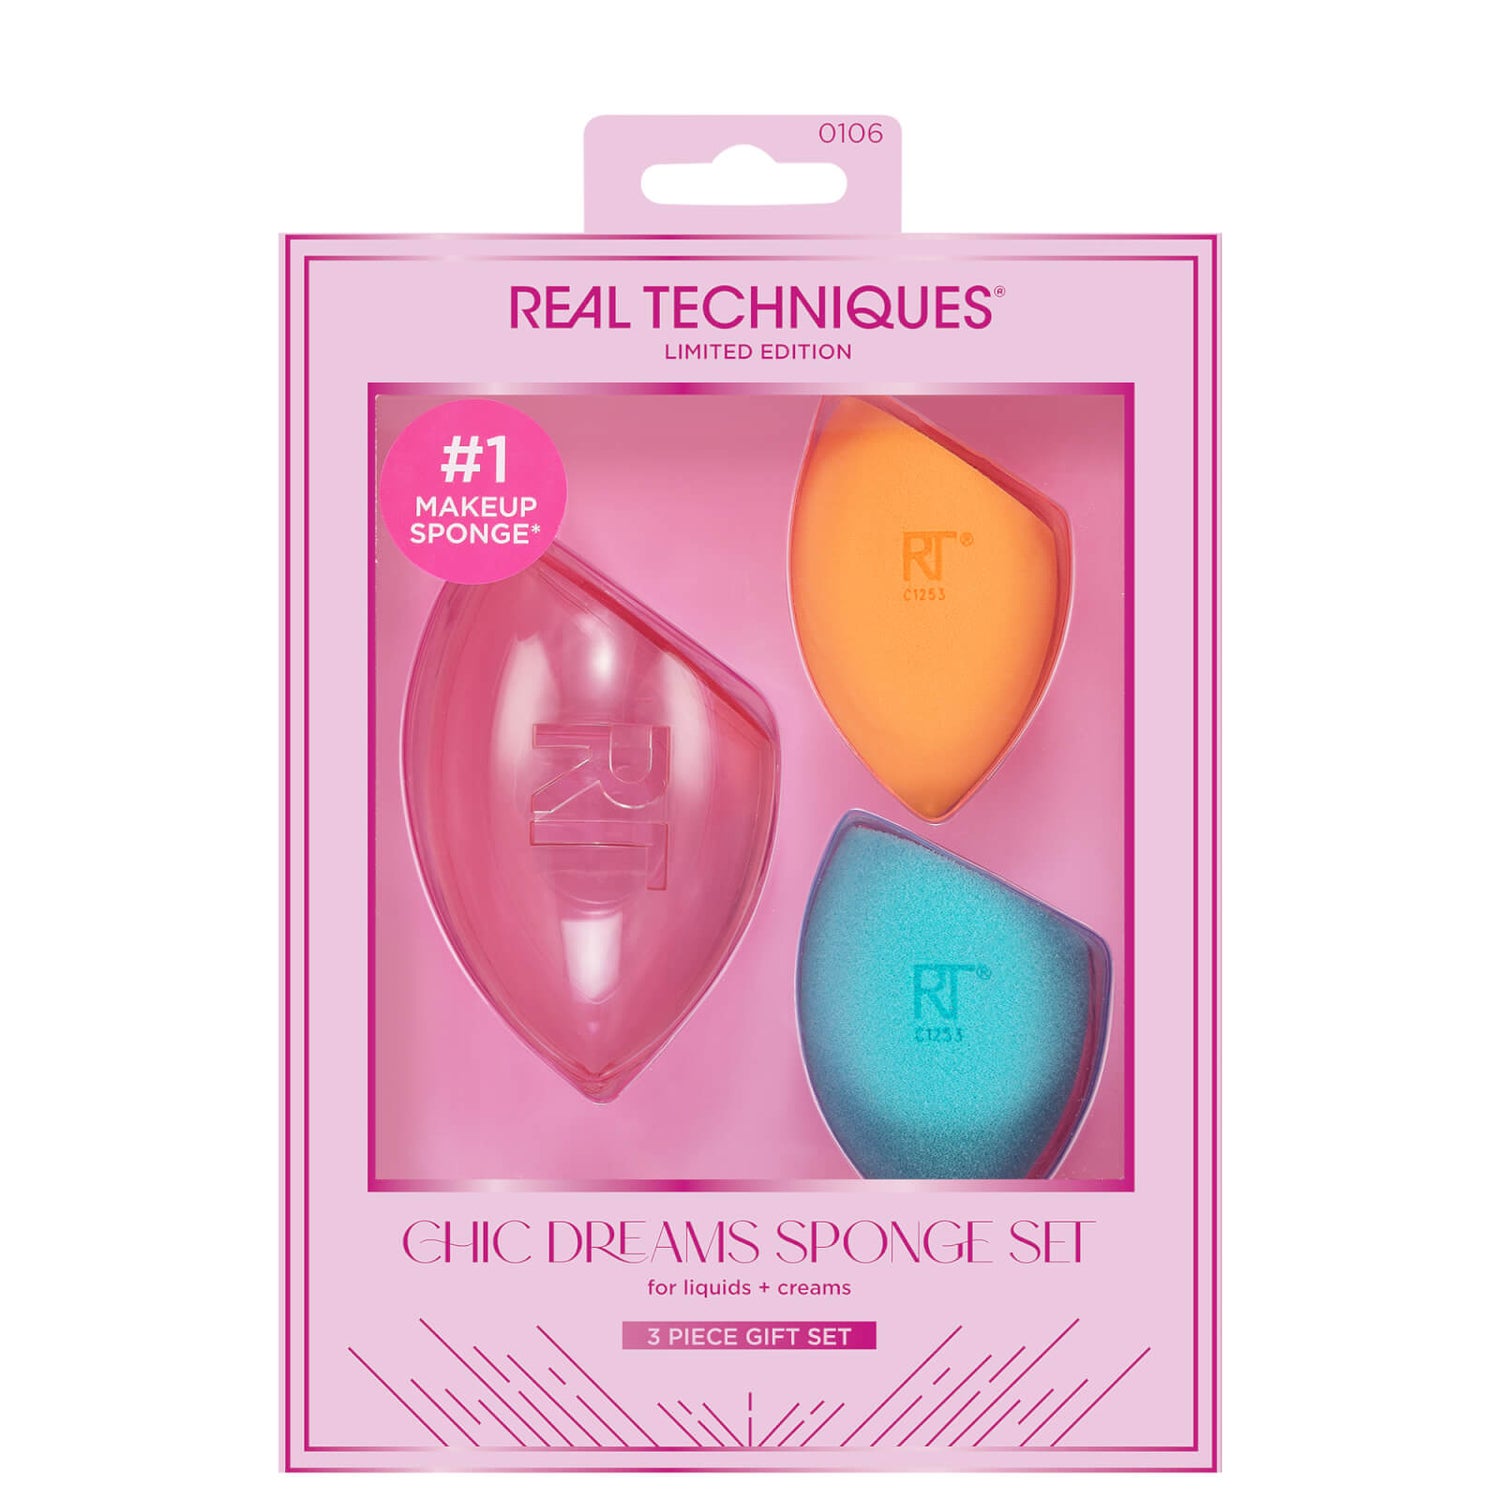 Real Techniques Chic Dreams Sponge Set (Worth £15.00)